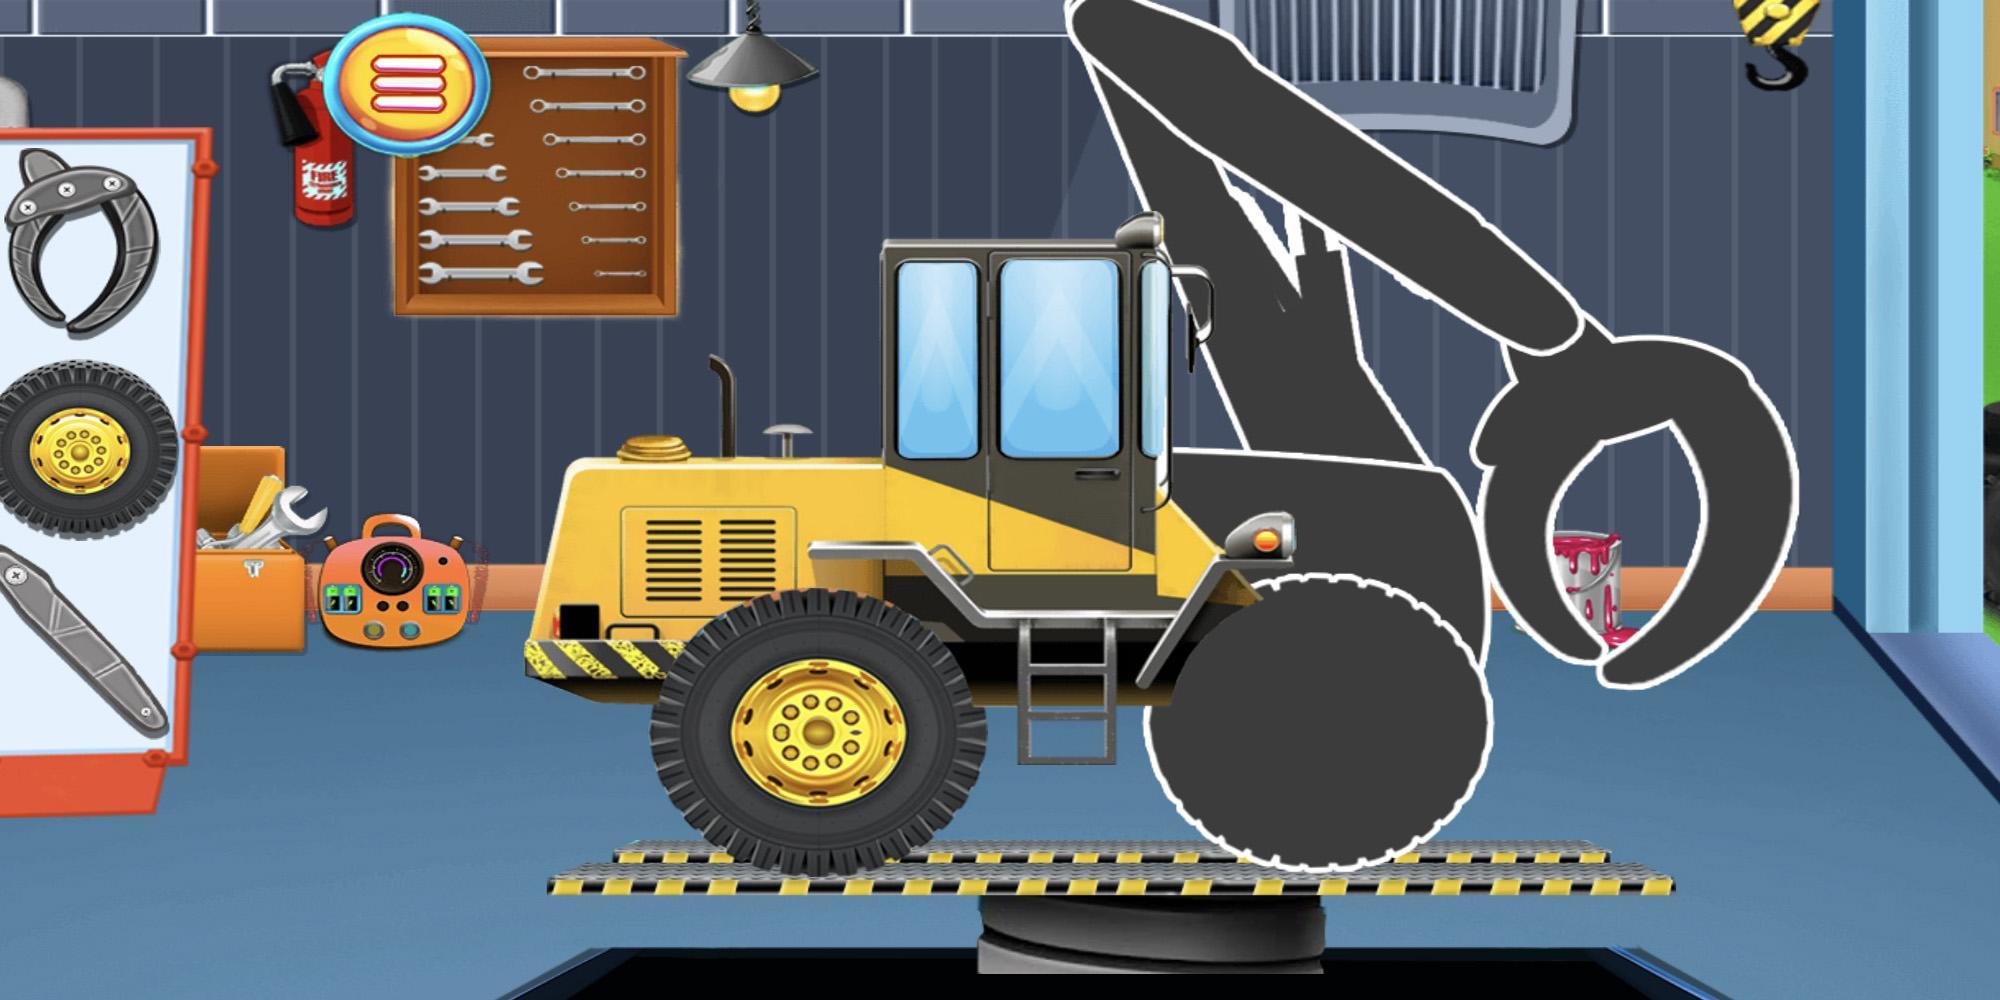 建設車両とトラック-子供向けゲームのキャプチャ